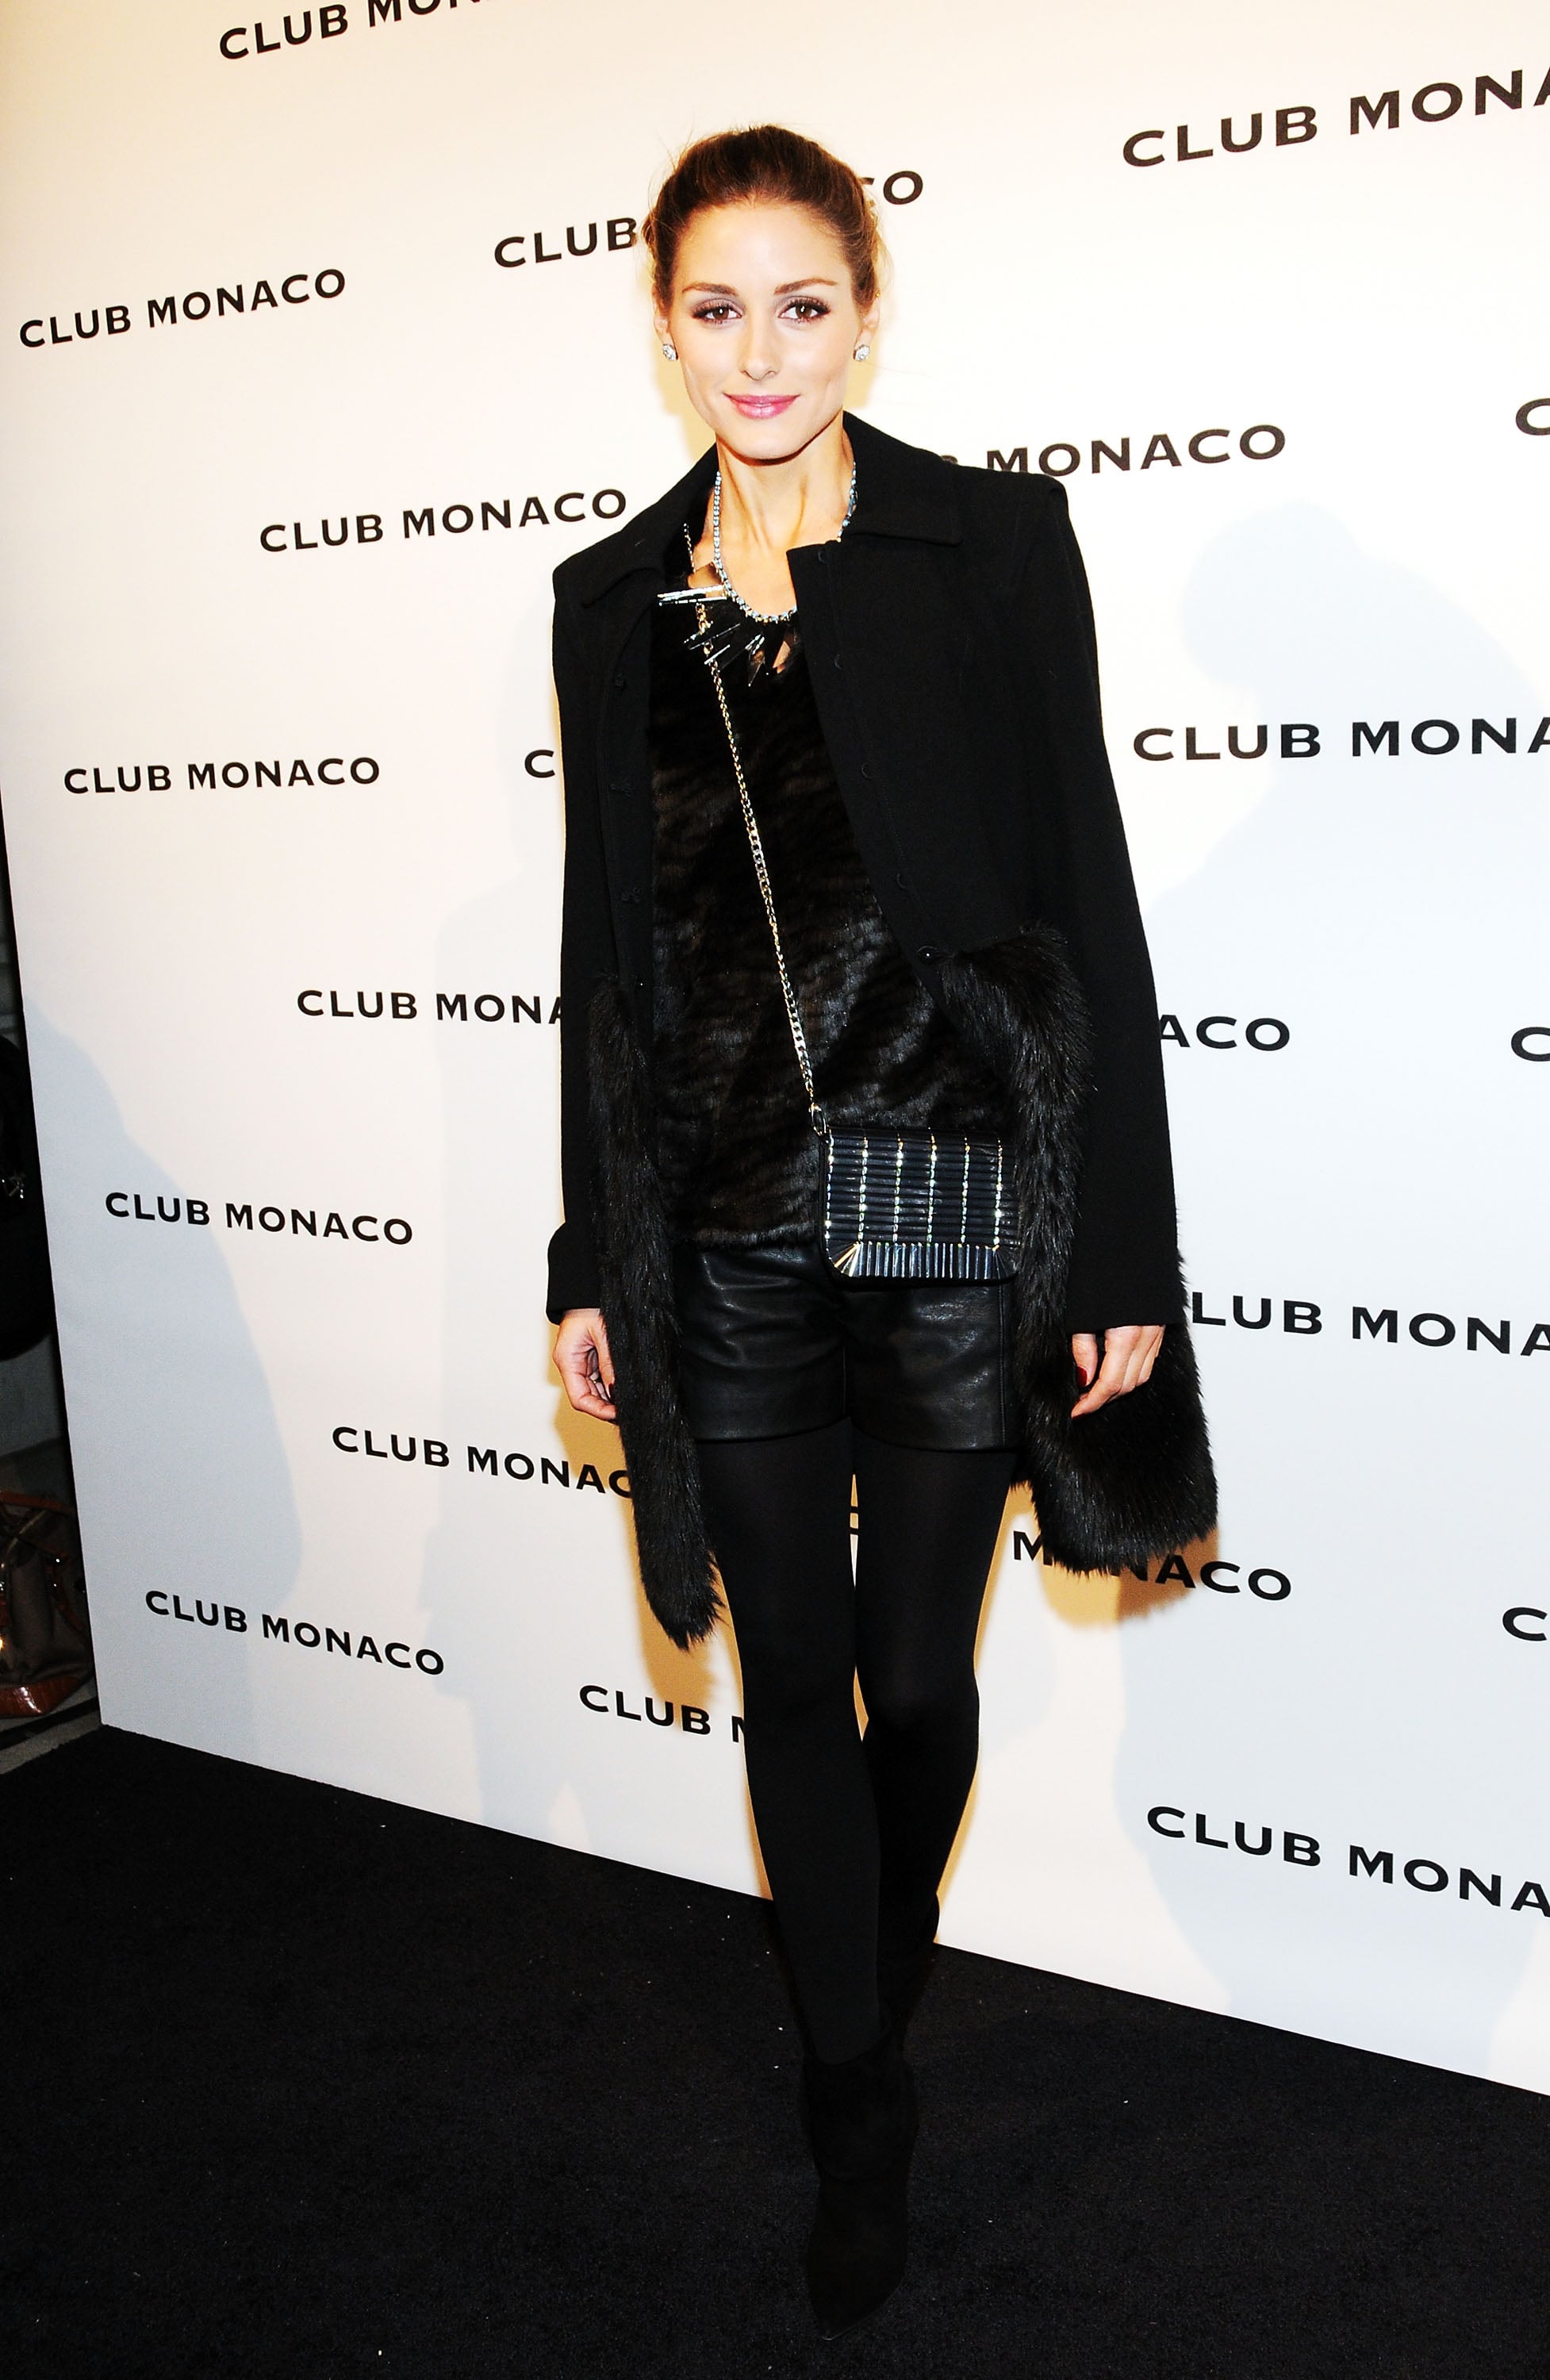 Club Monaco shirt and Louis Vuitton bag